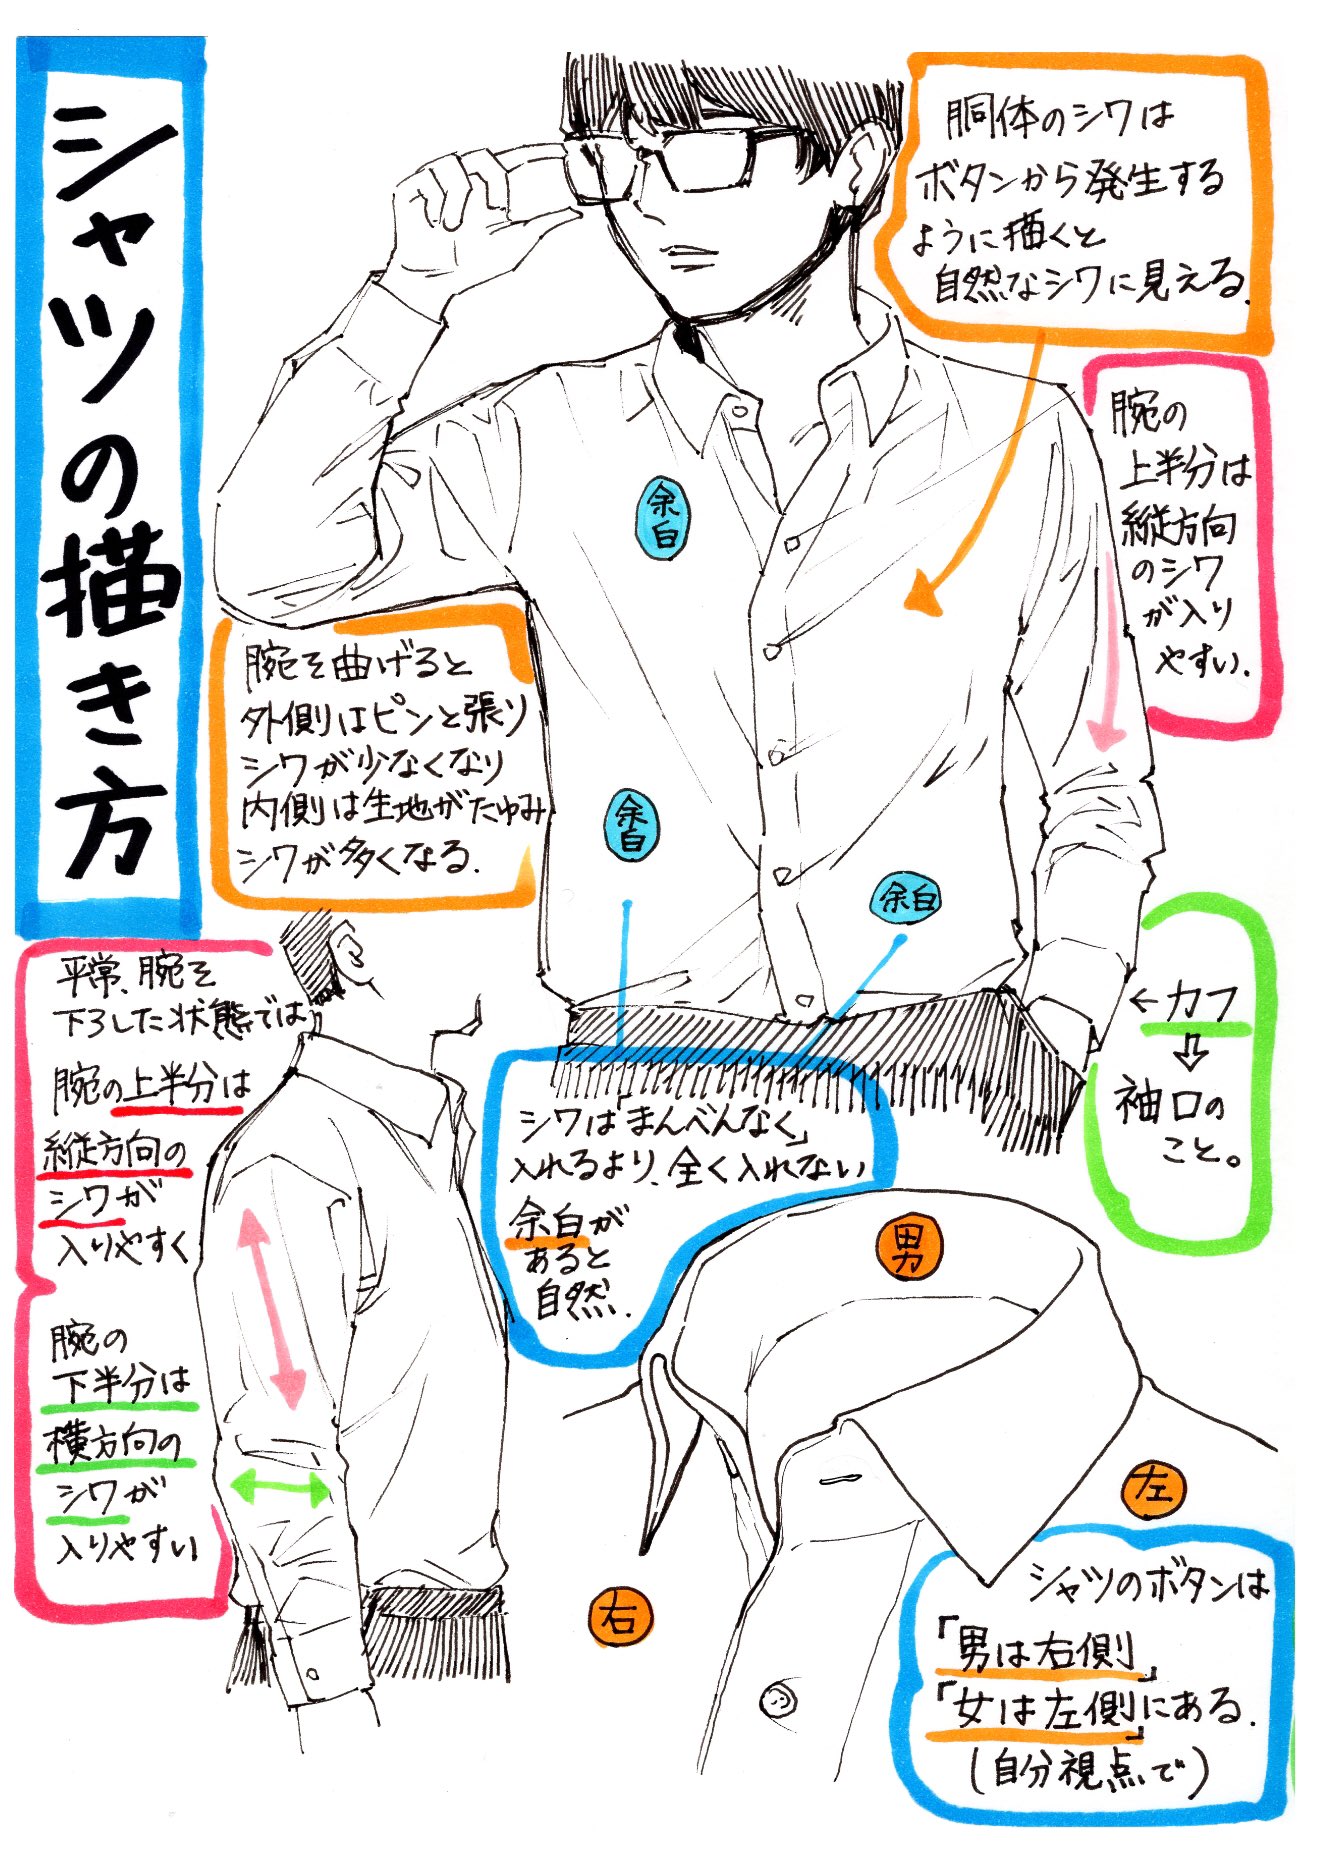 吉村拓也 イラスト講座 シャツの描き方 腕まくりやシャツしわ が上達する シャツ服の3ページ講座 です T Co Uvcuyfc4ra Twitter